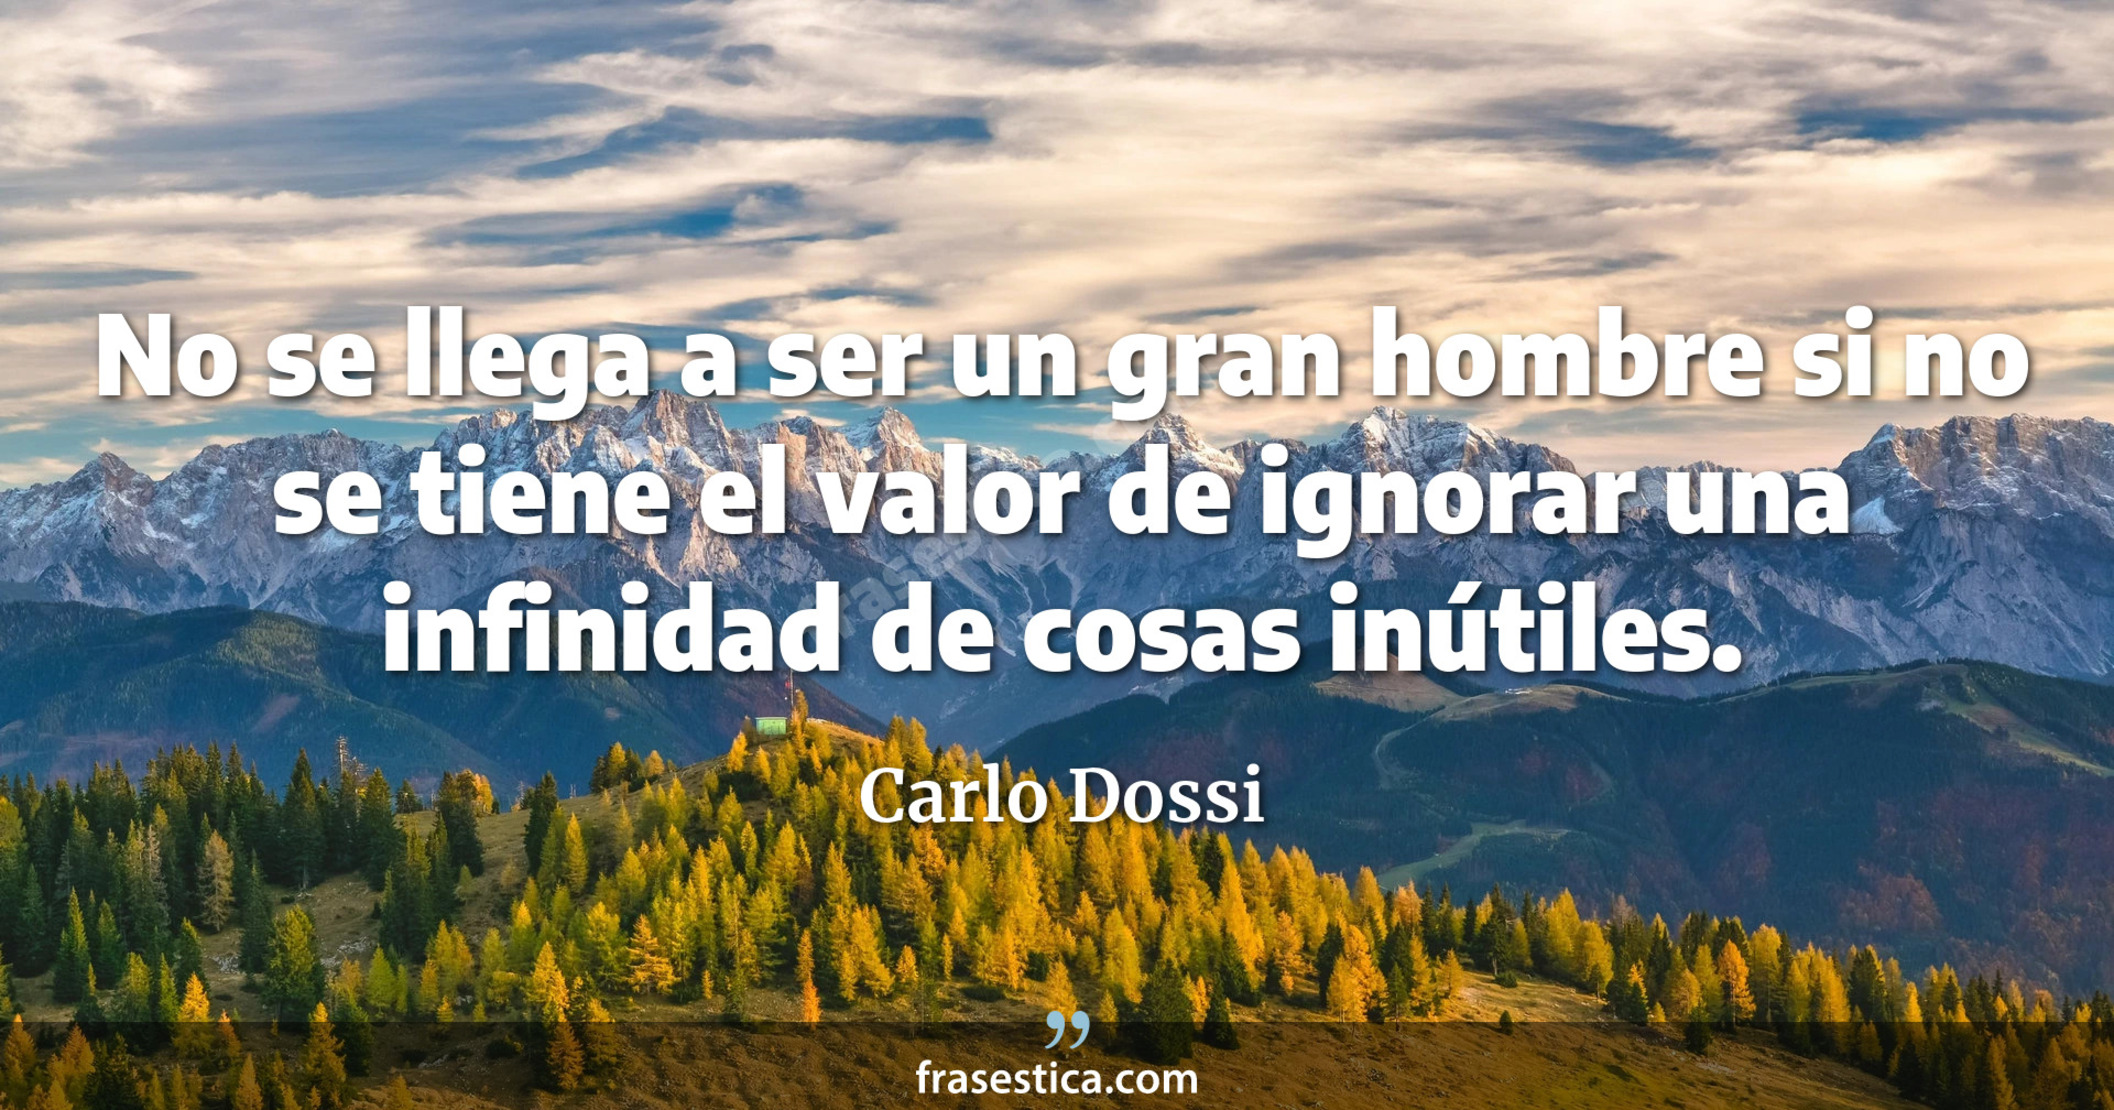 No se llega a ser un gran hombre si no se tiene el valor de ignorar una infinidad de cosas inútiles. - Carlo Dossi